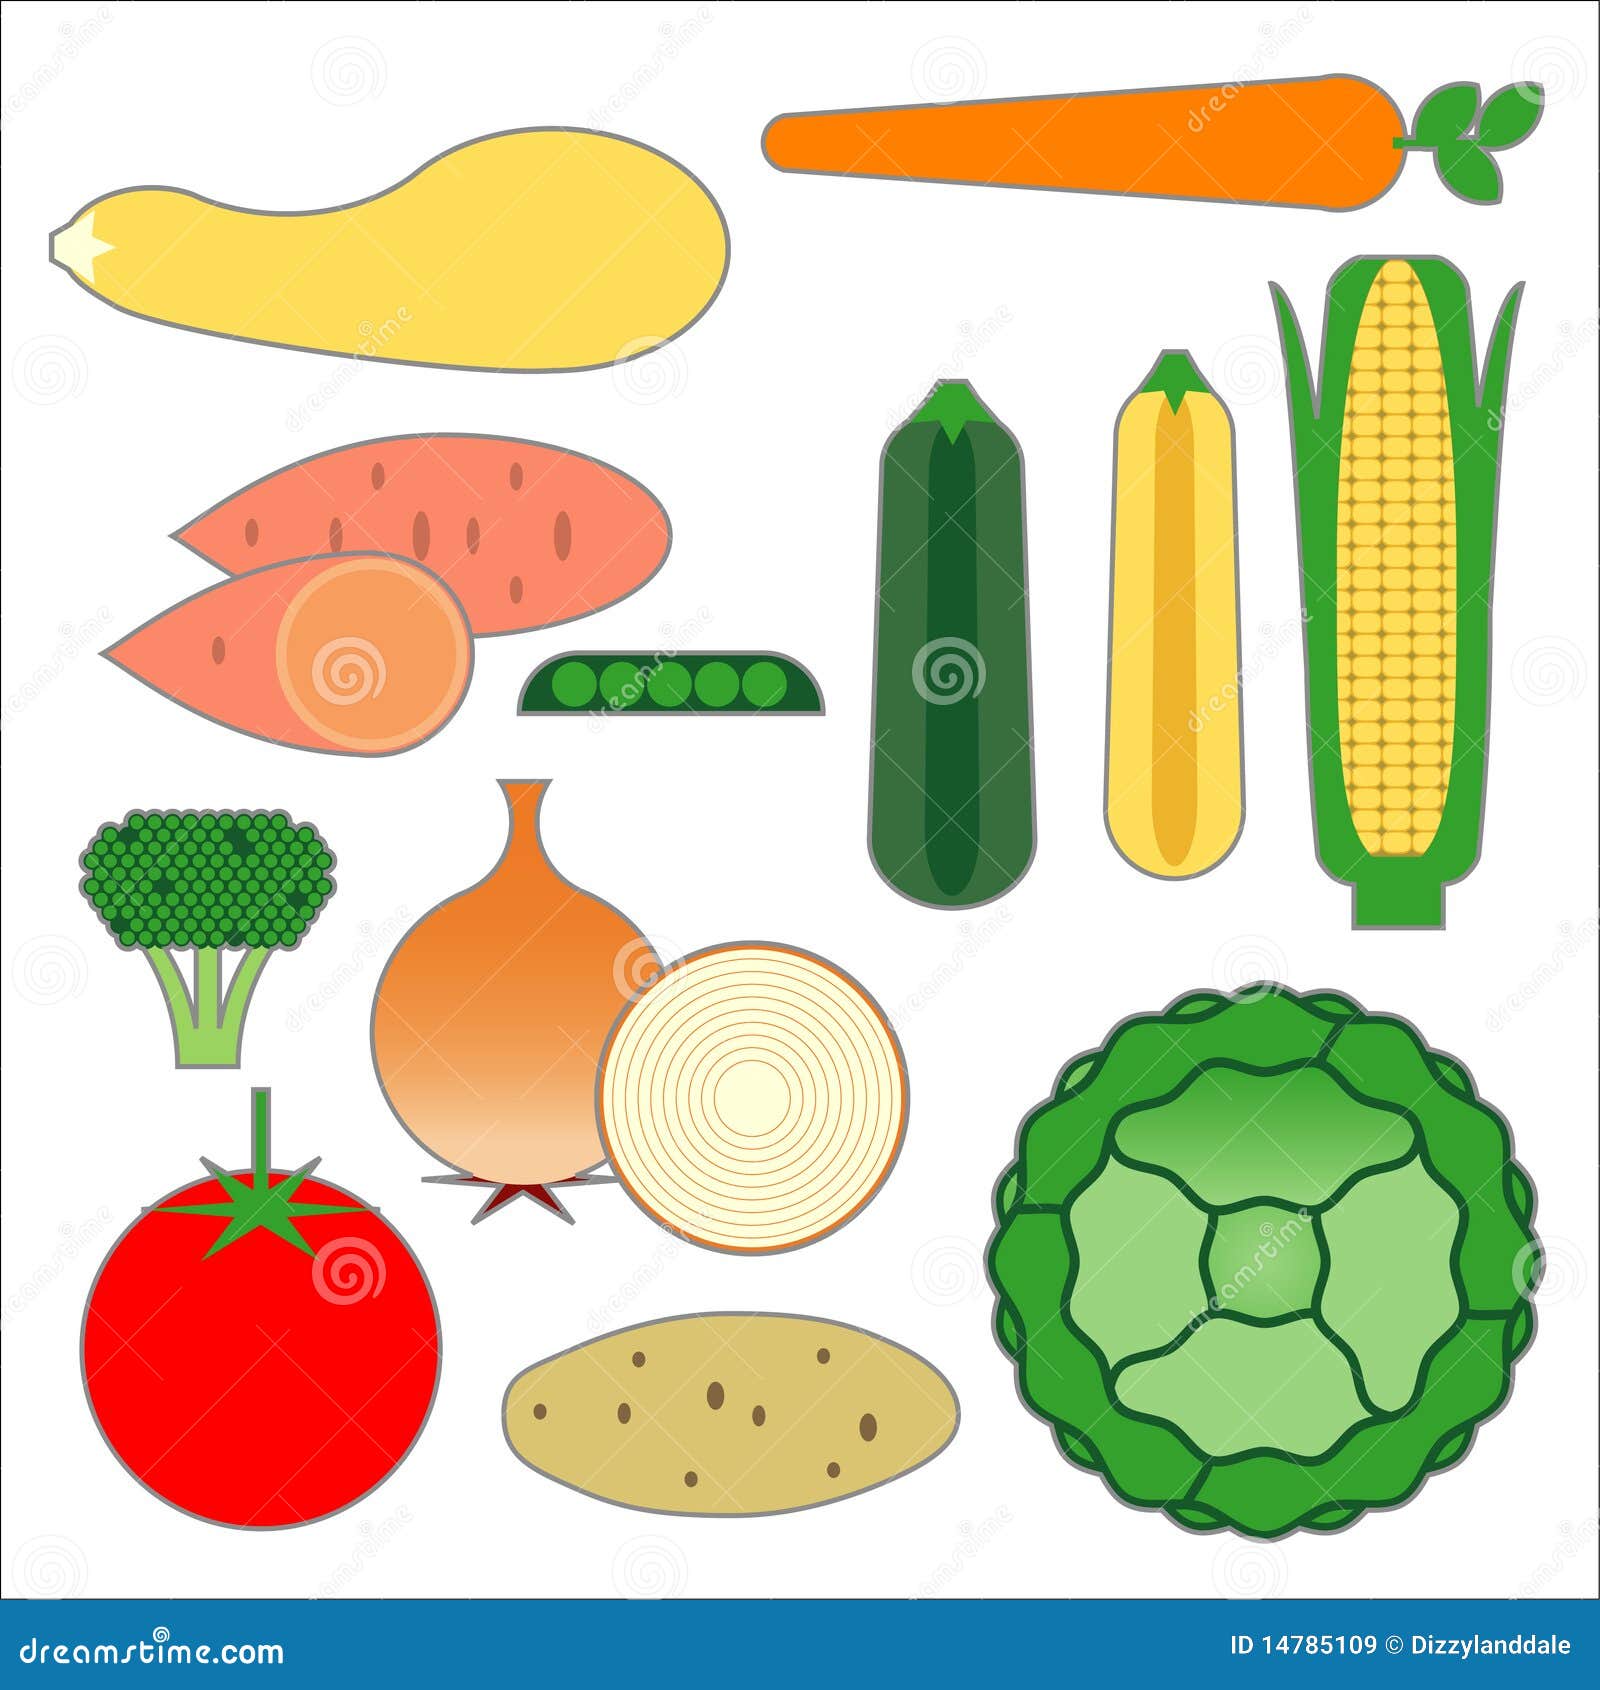 Alimentos vegetales de la pirámide de alimento. Representatons gráficos de los alimentos vegetales principales en la nueva pirámide de alimento